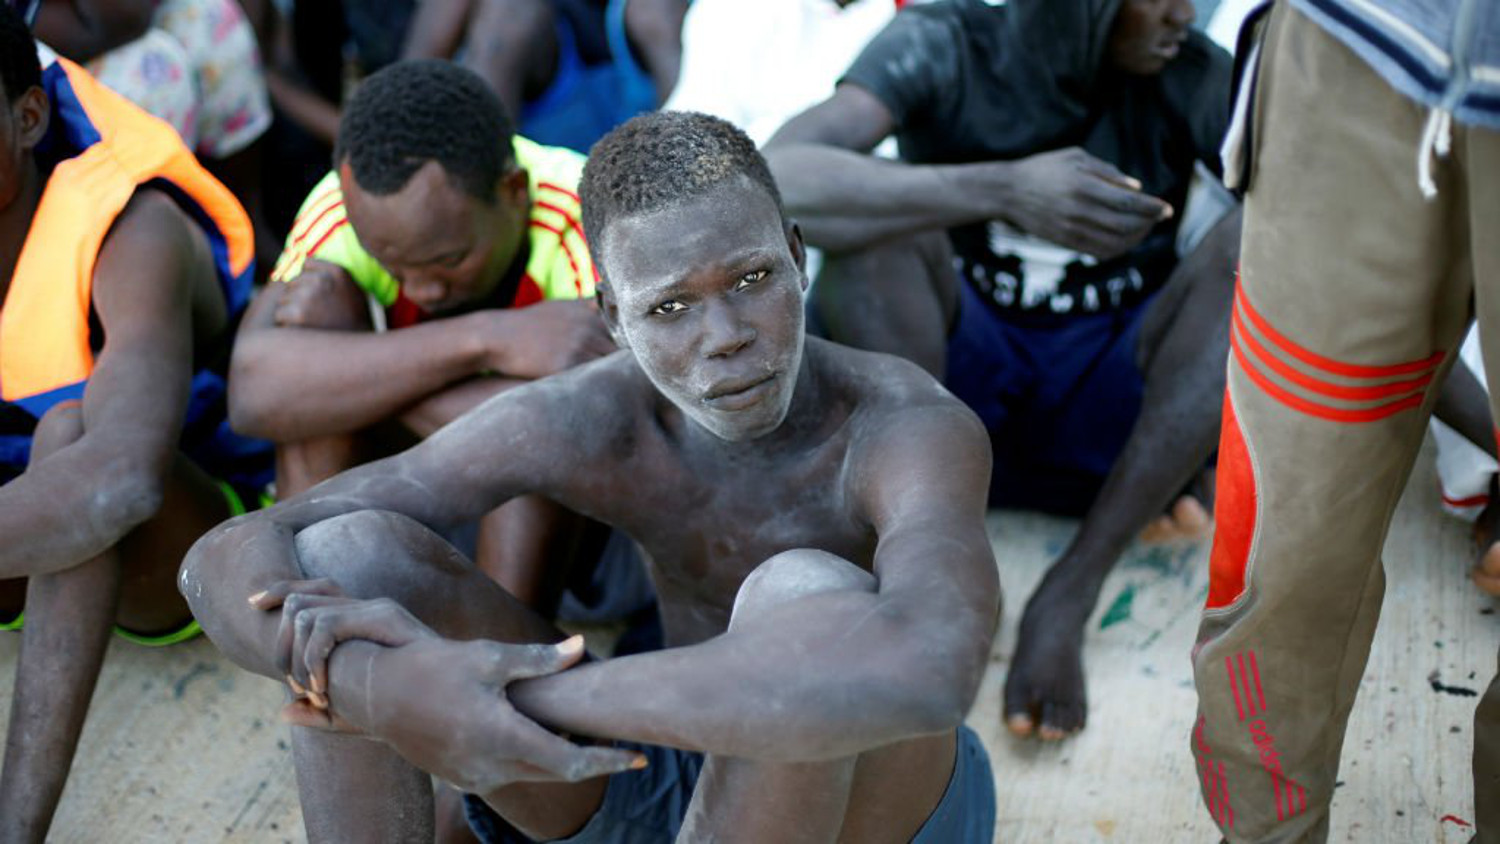 De retour au pays : des migrants racontent « l’enfer libyen »